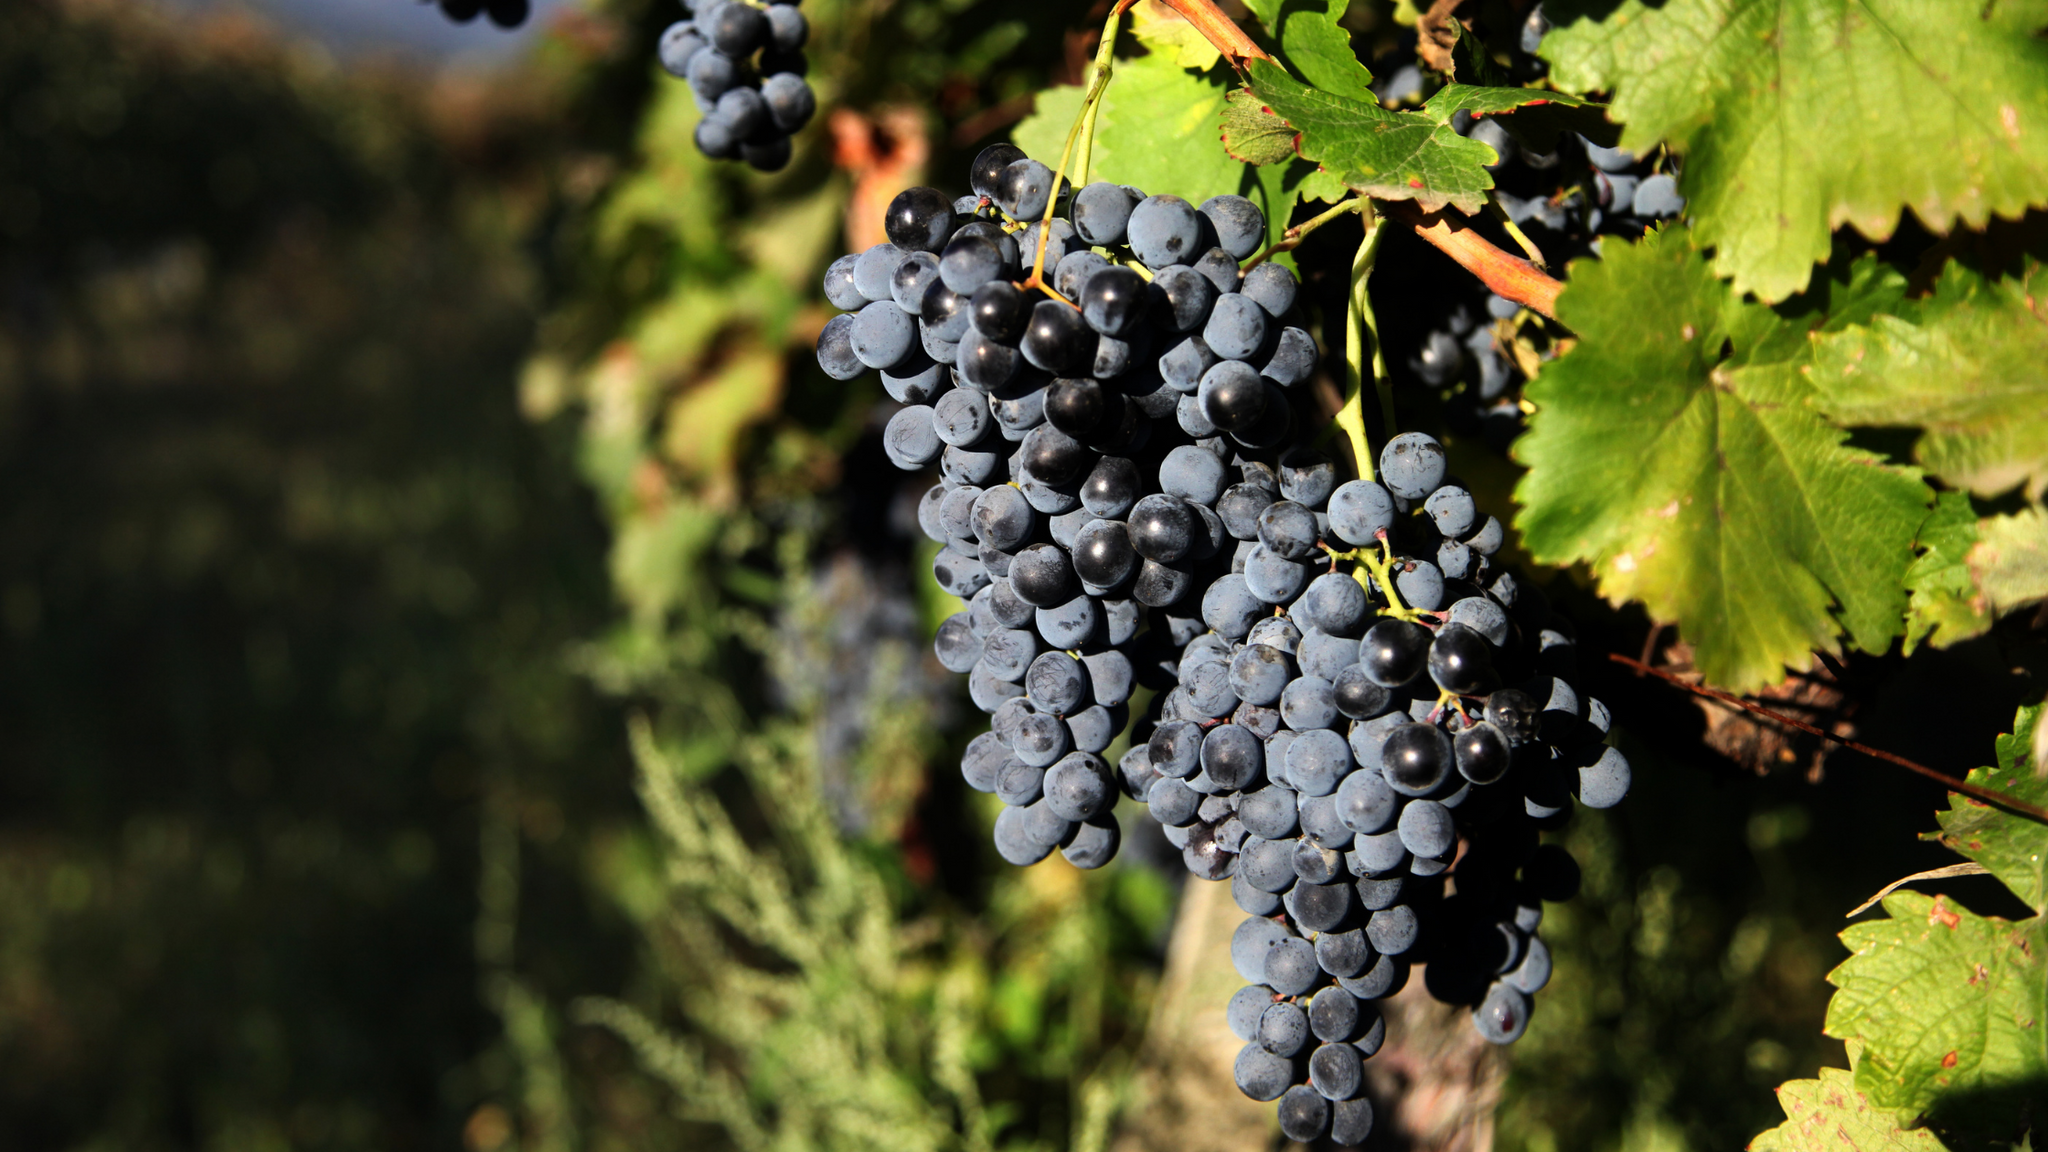 რთველი (Rtveli) - a grape harvest in Georgia